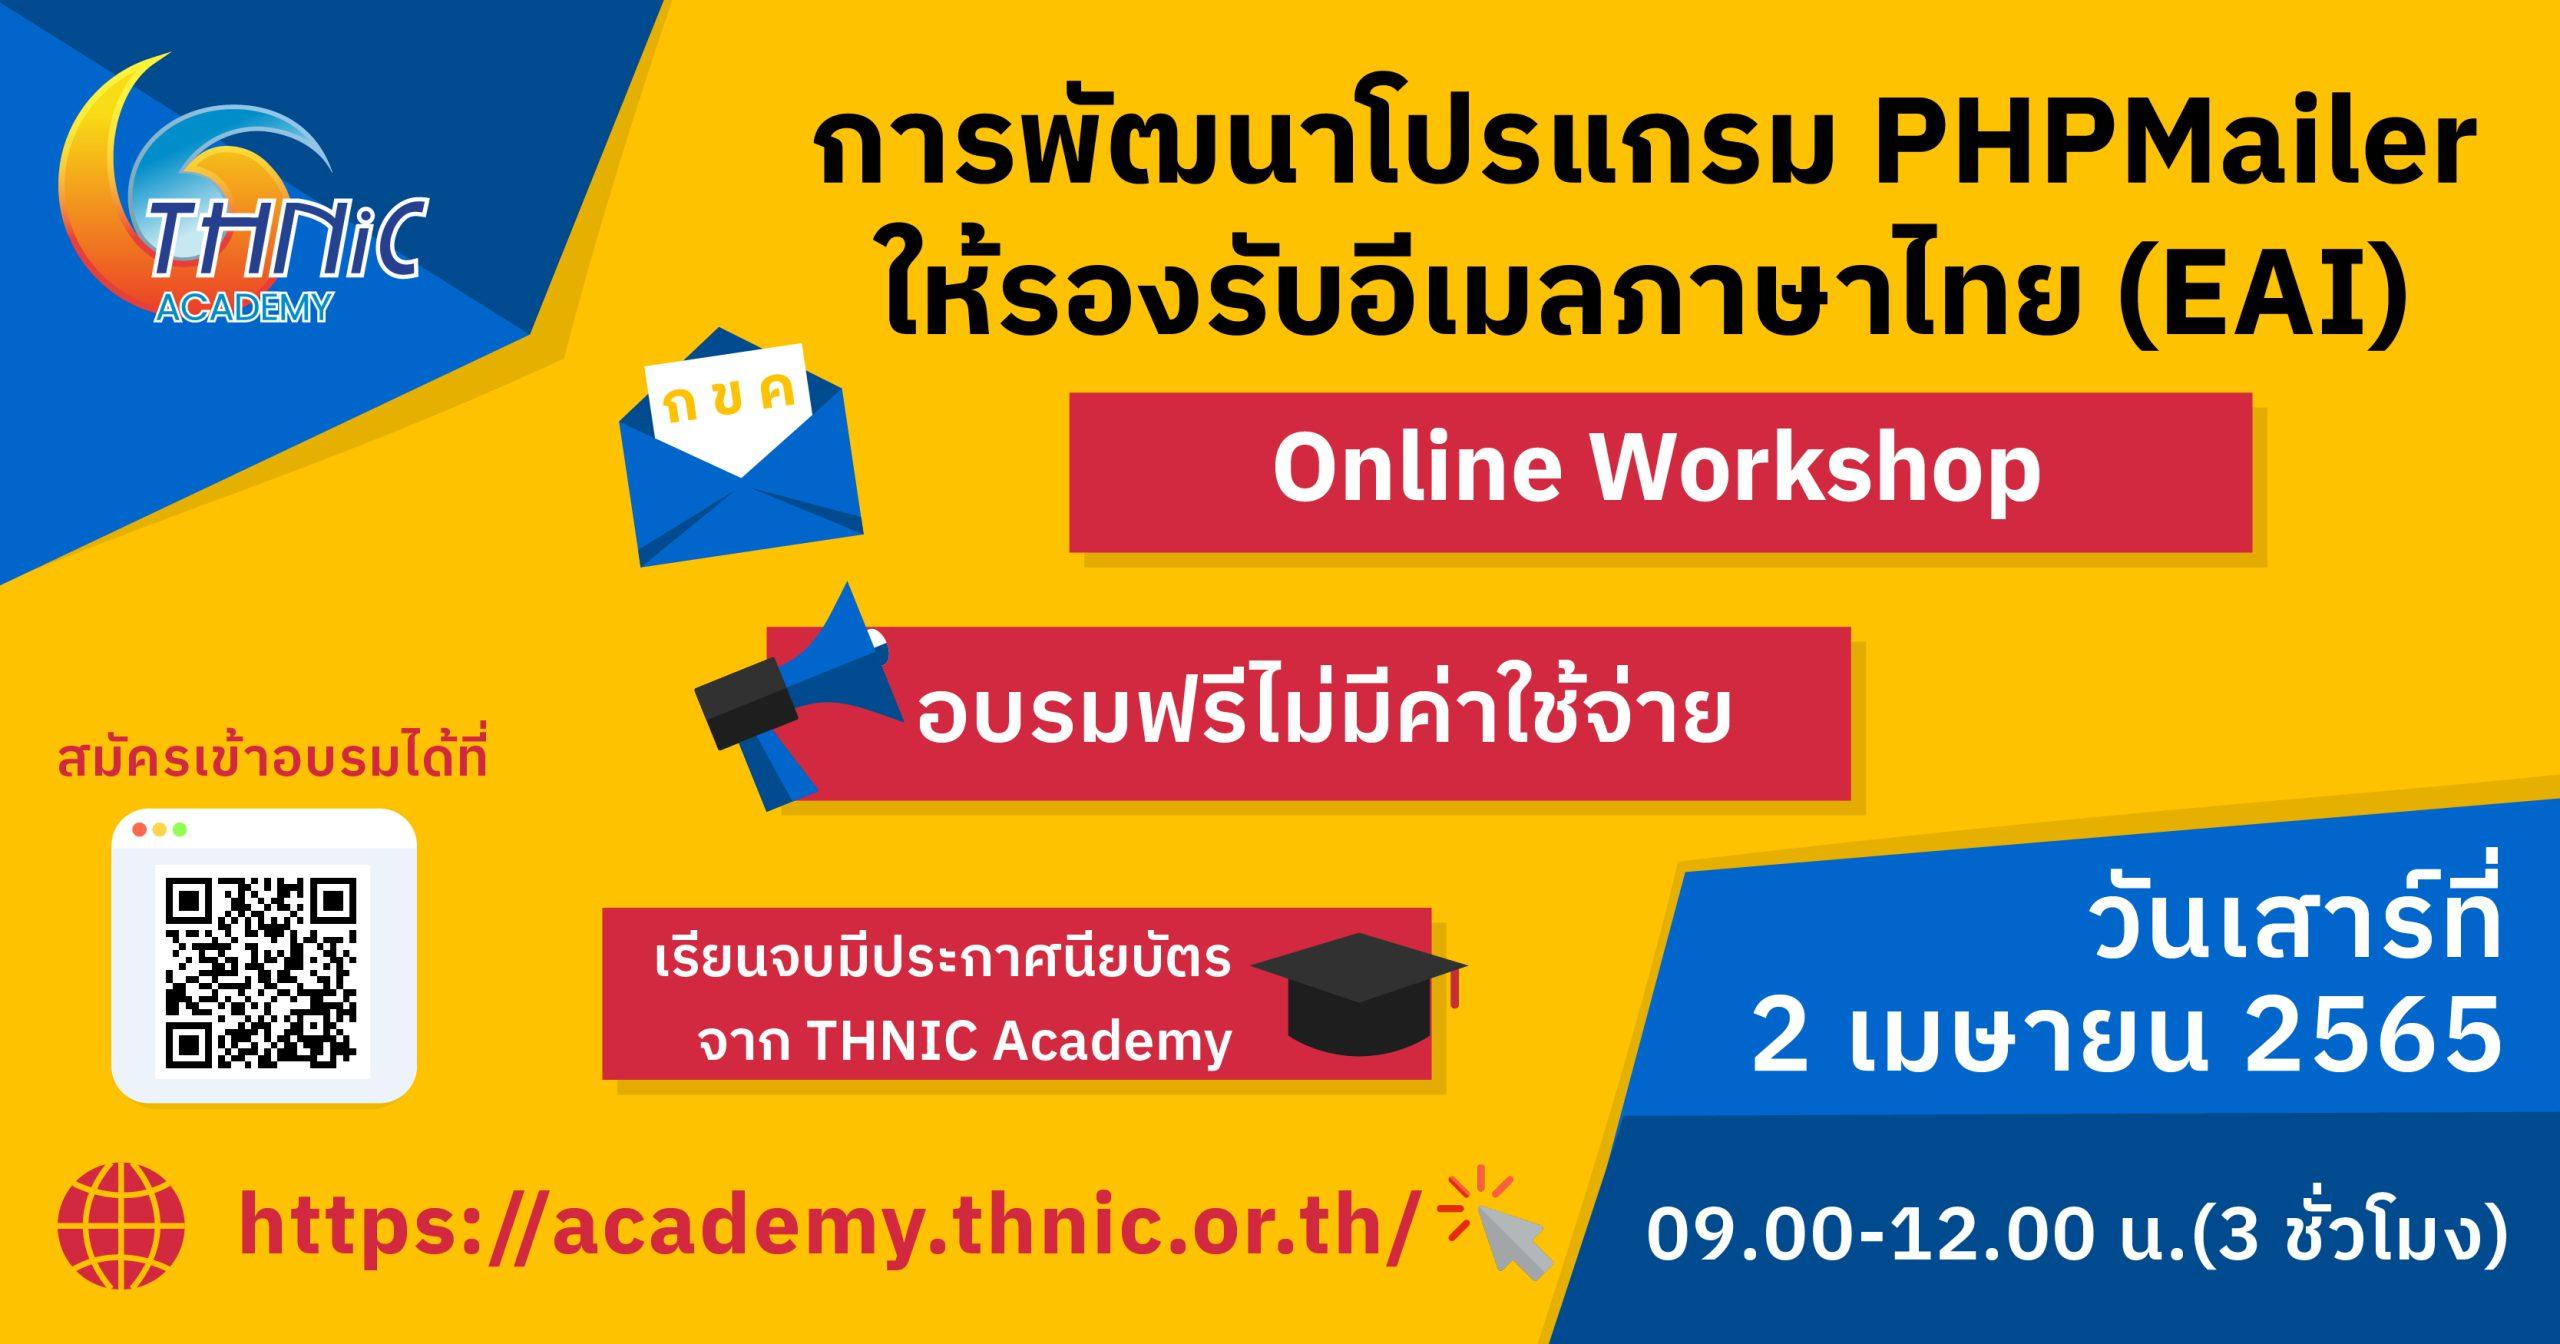 Online Workshop : การพัฒนาโปรแกรม PHPMailer ให้รองรับอีเมลภาษาไทย (EAI)